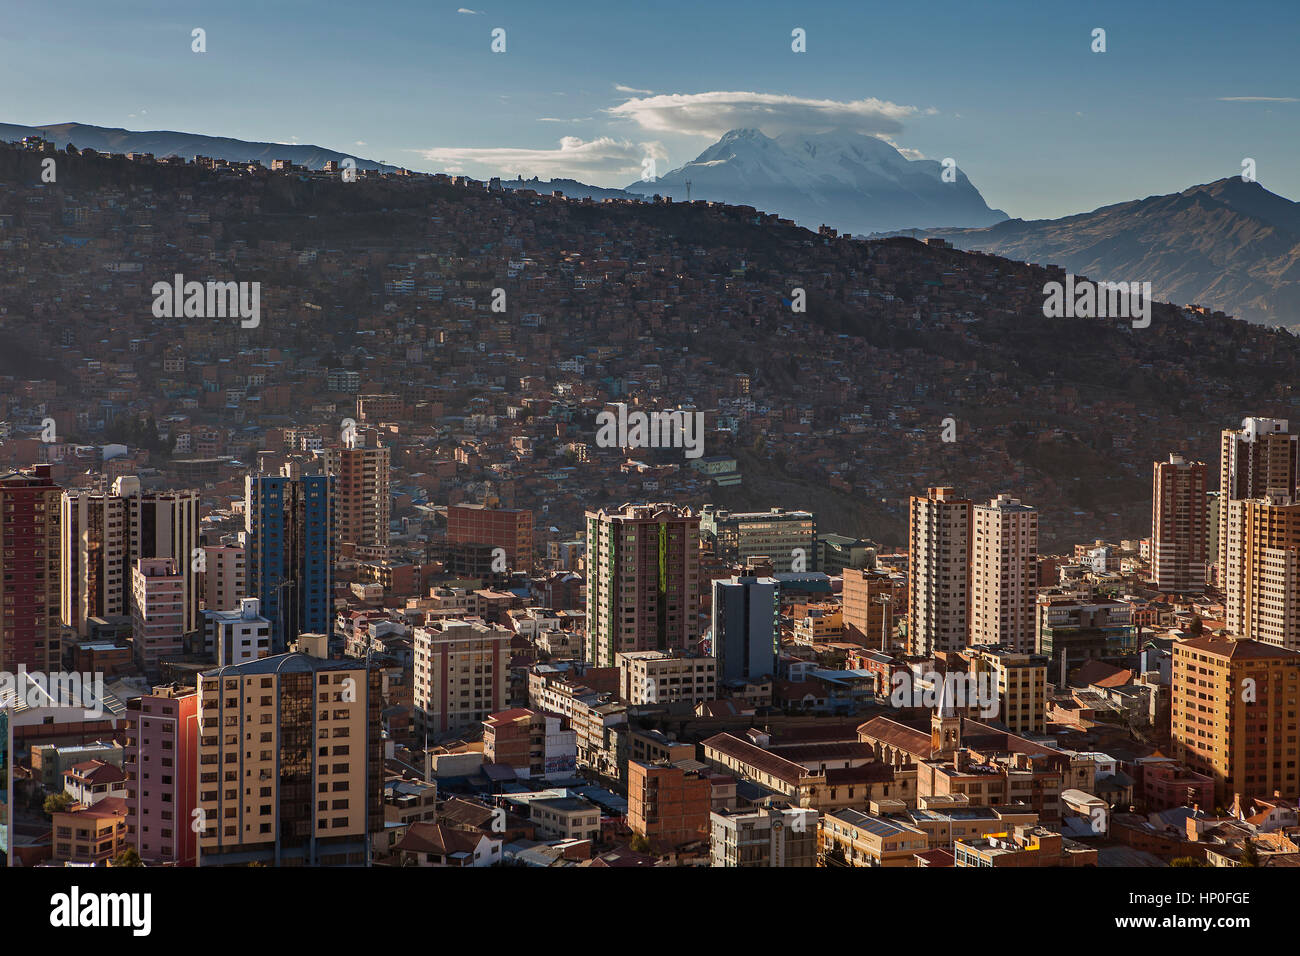 Vista panoramica della città, in background montagna Illimani 6462 m, La Paz, Bolivia Foto Stock